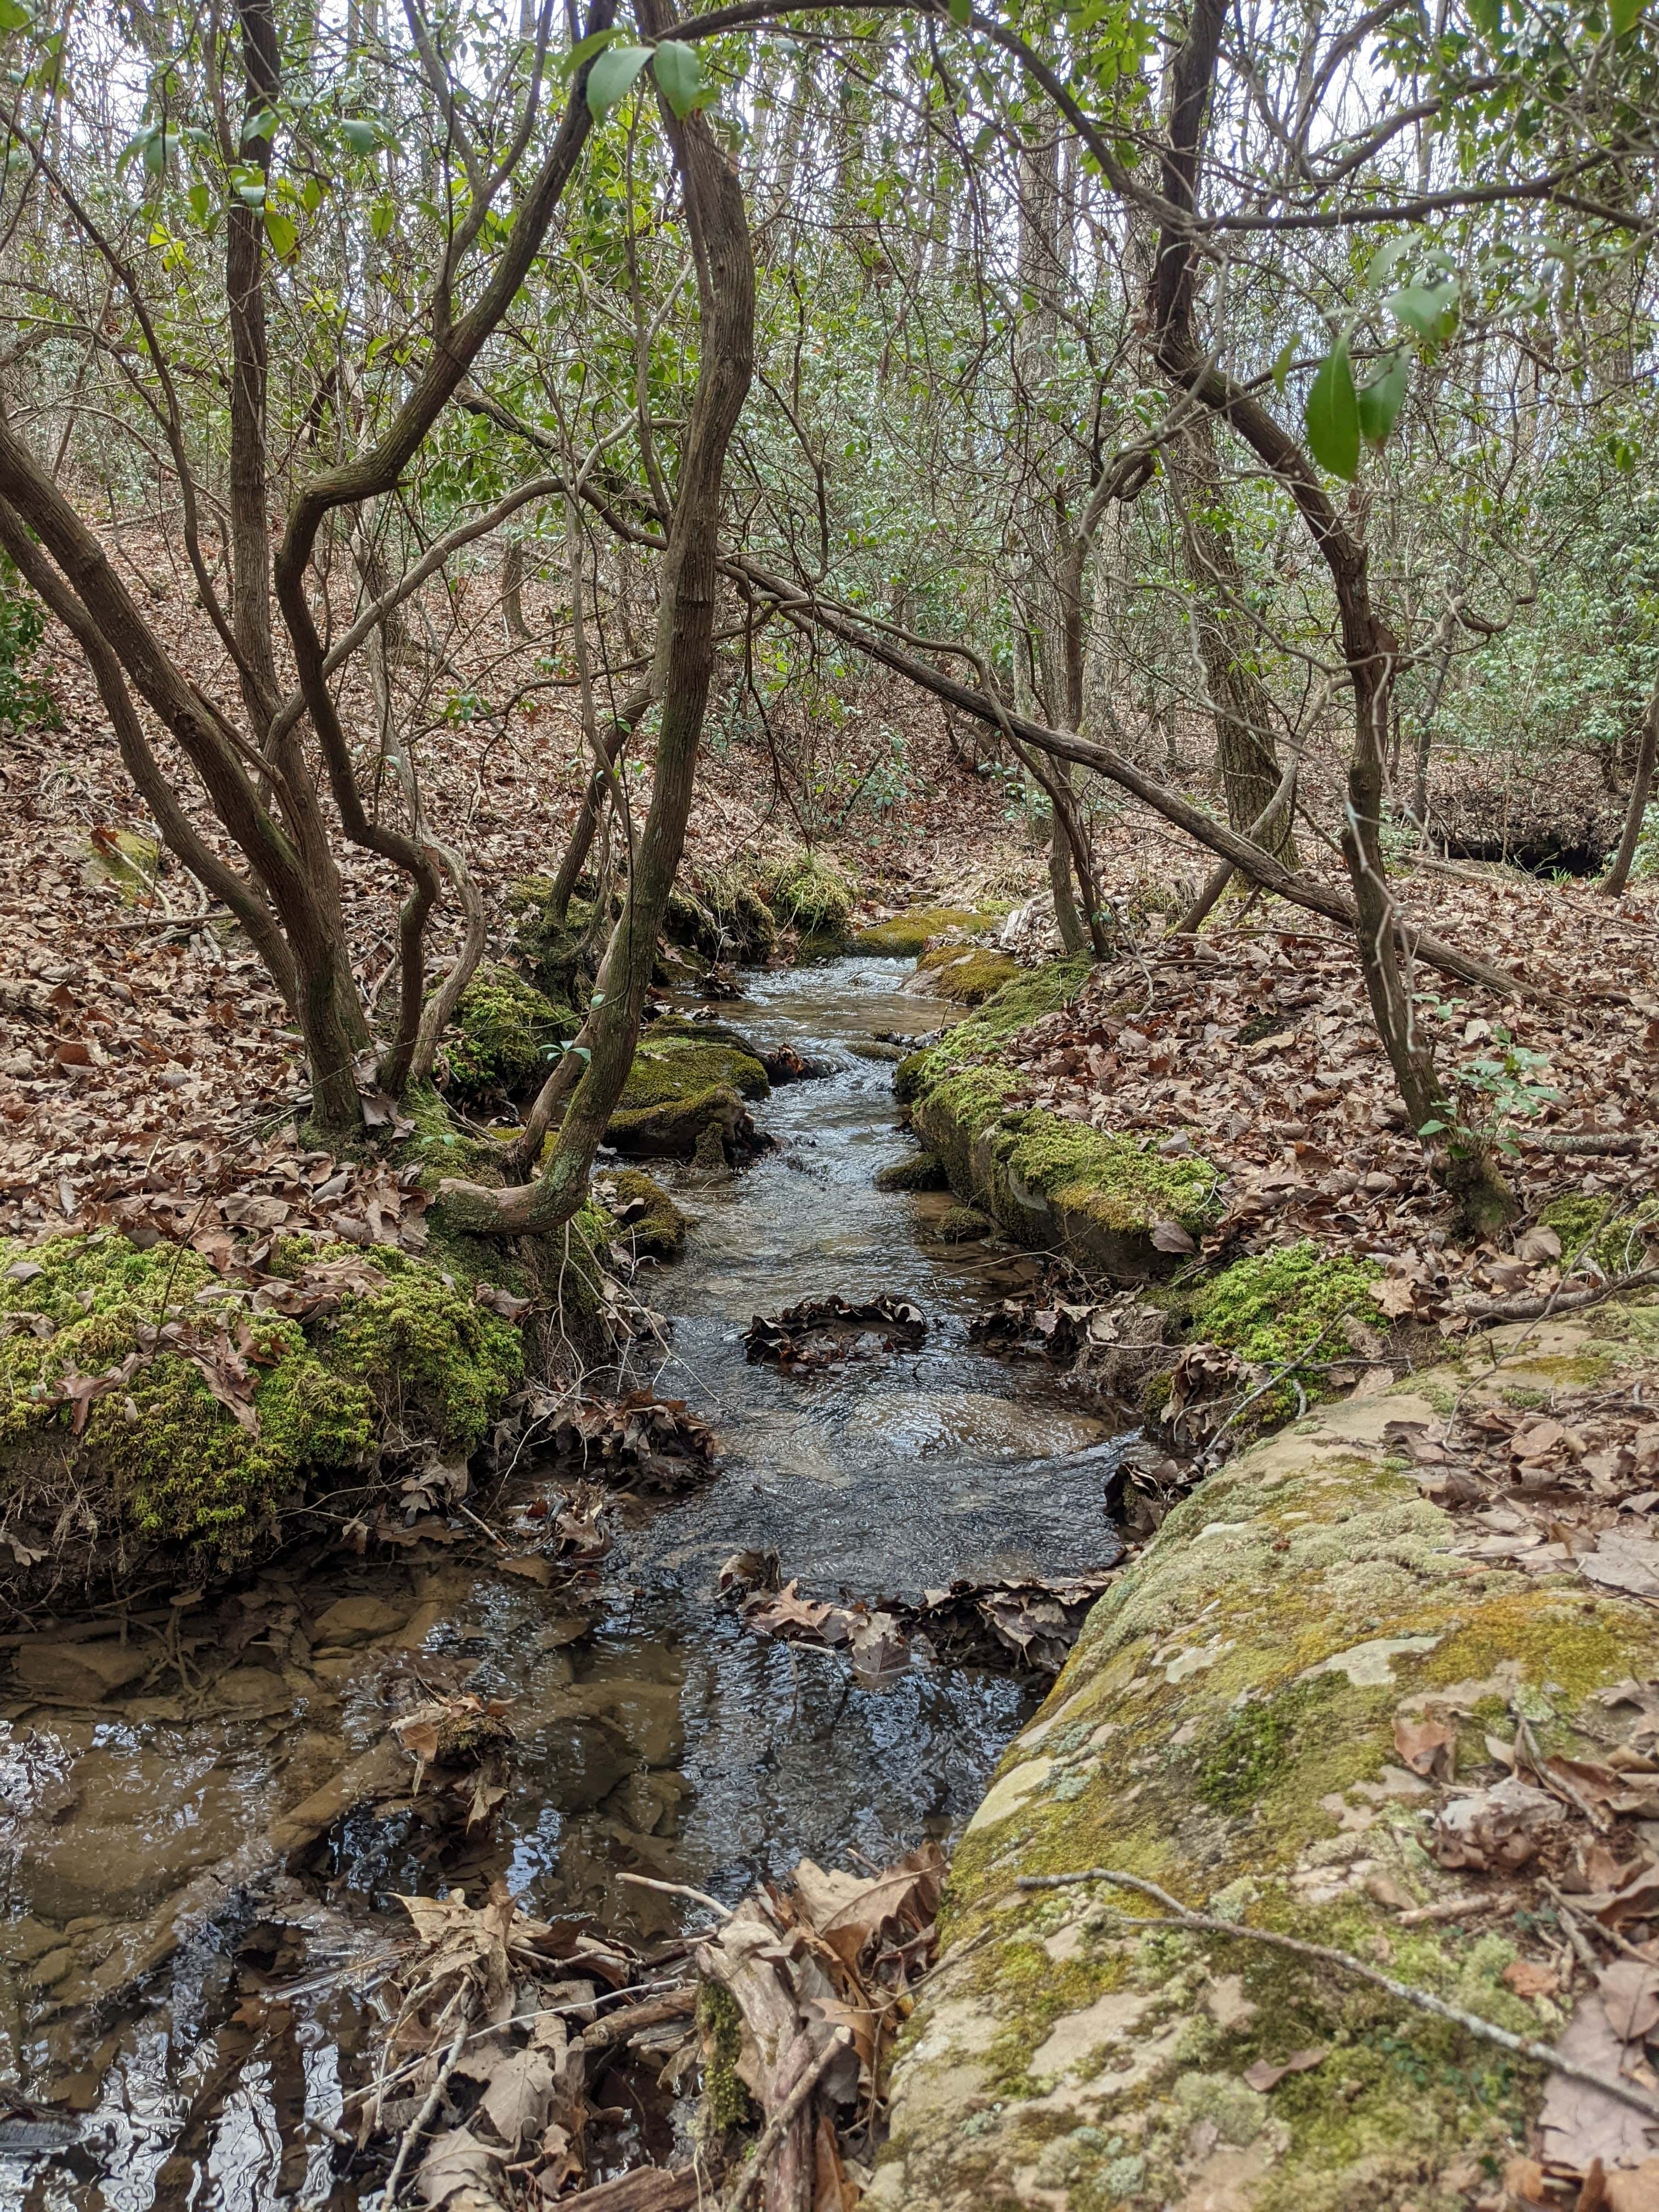 A stream flows through a lush forest.